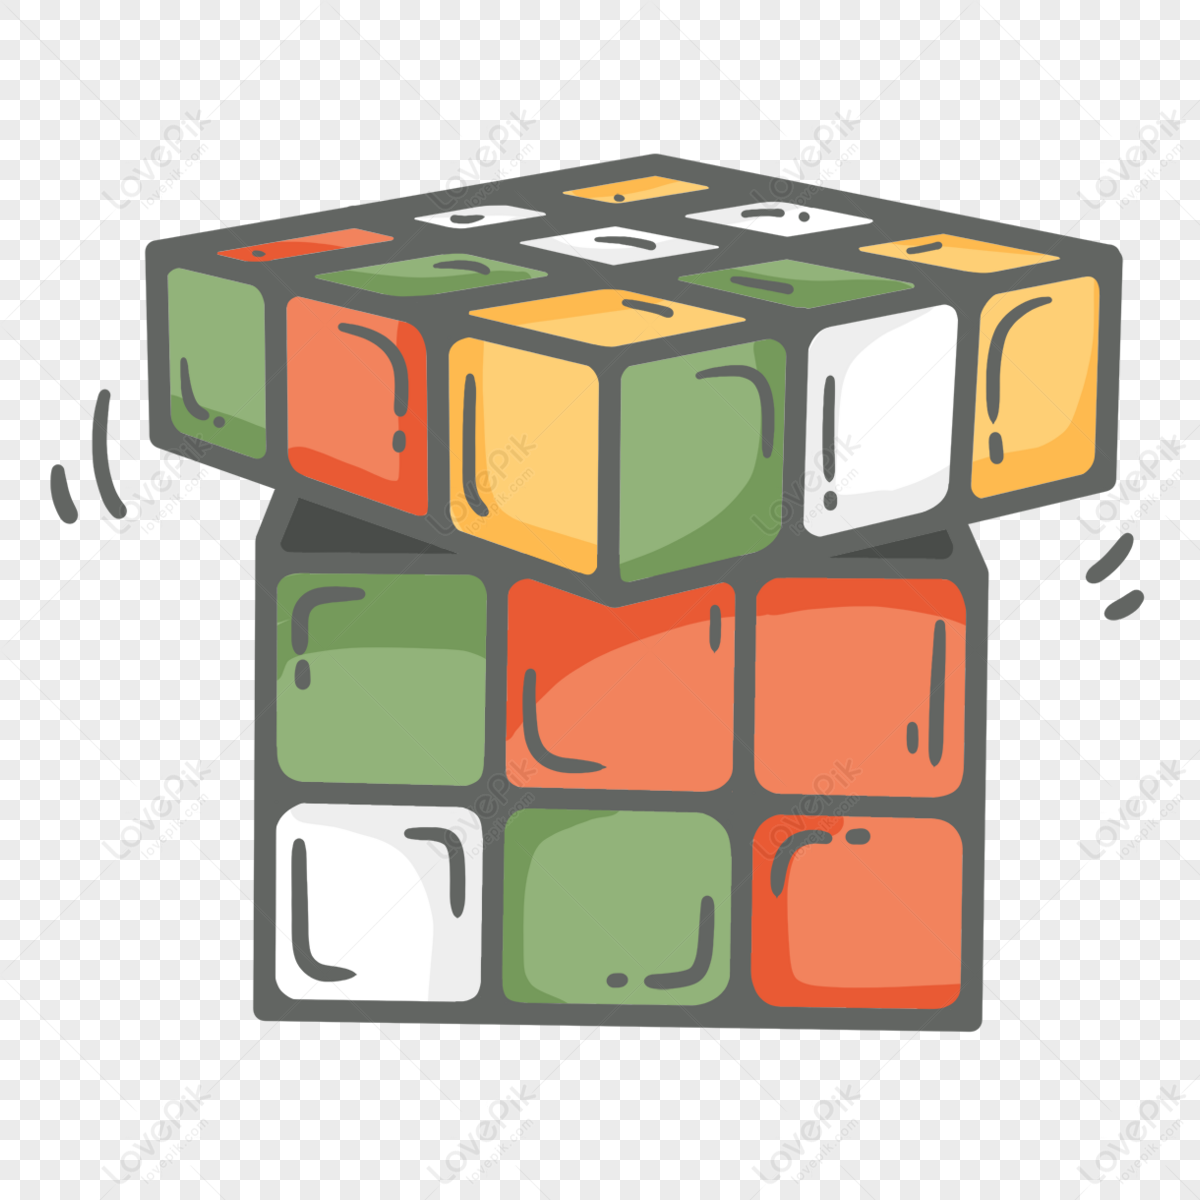 Câu chuyện về khối Rubik “tàn phế”